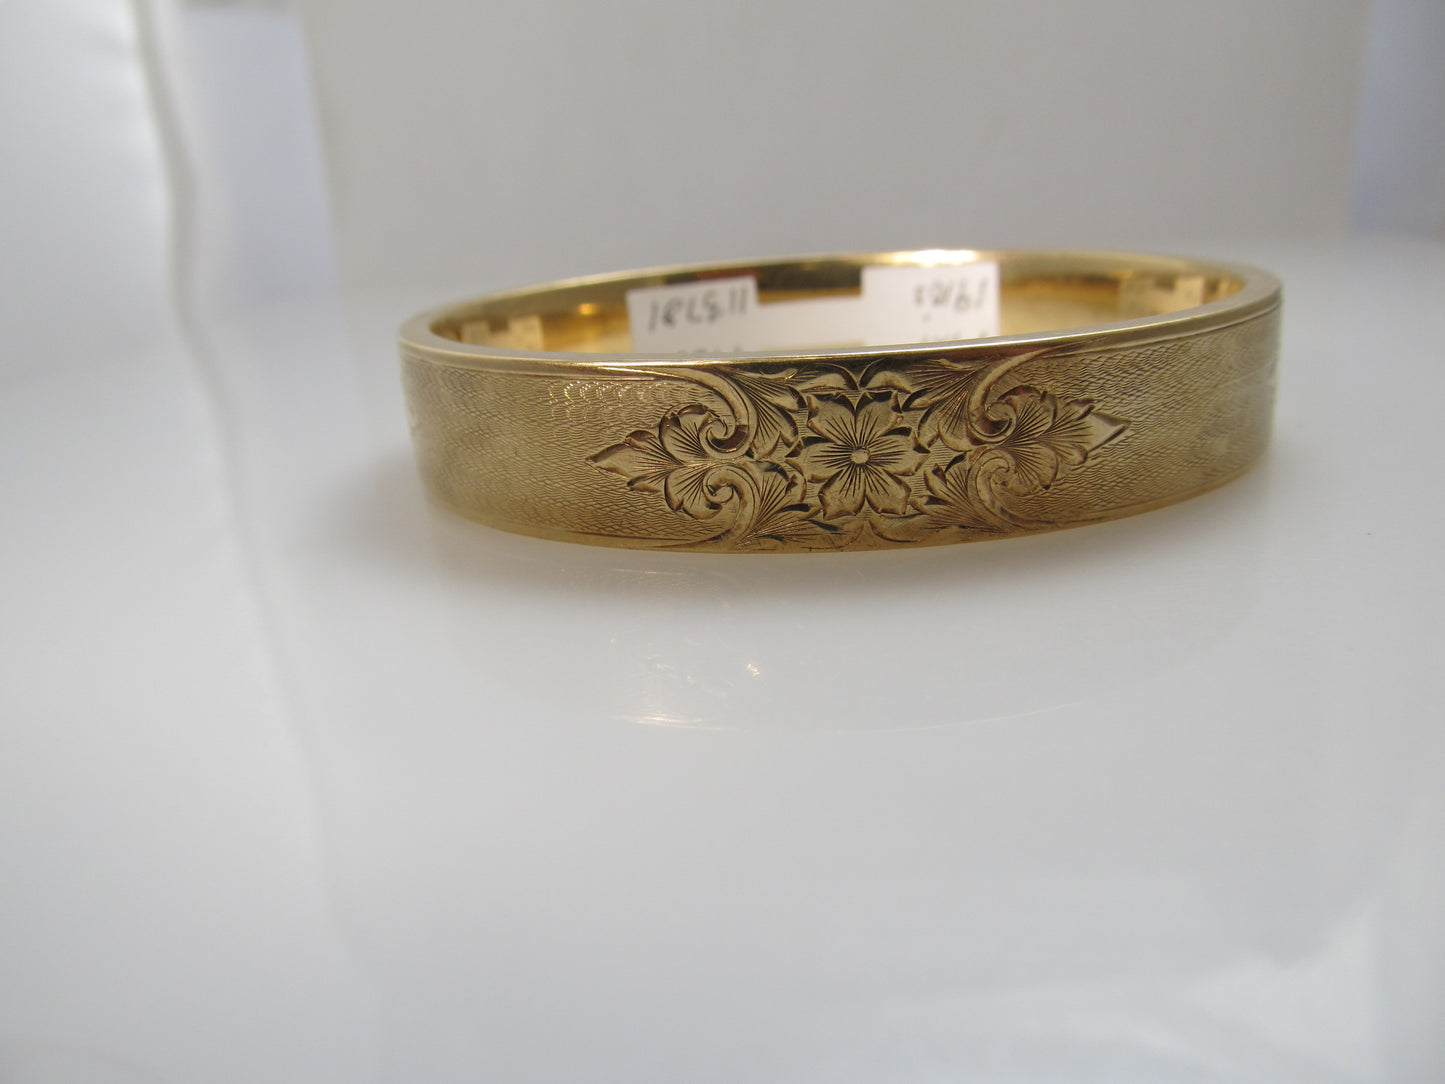 Vintage 14k gold engraved bangle bracelet